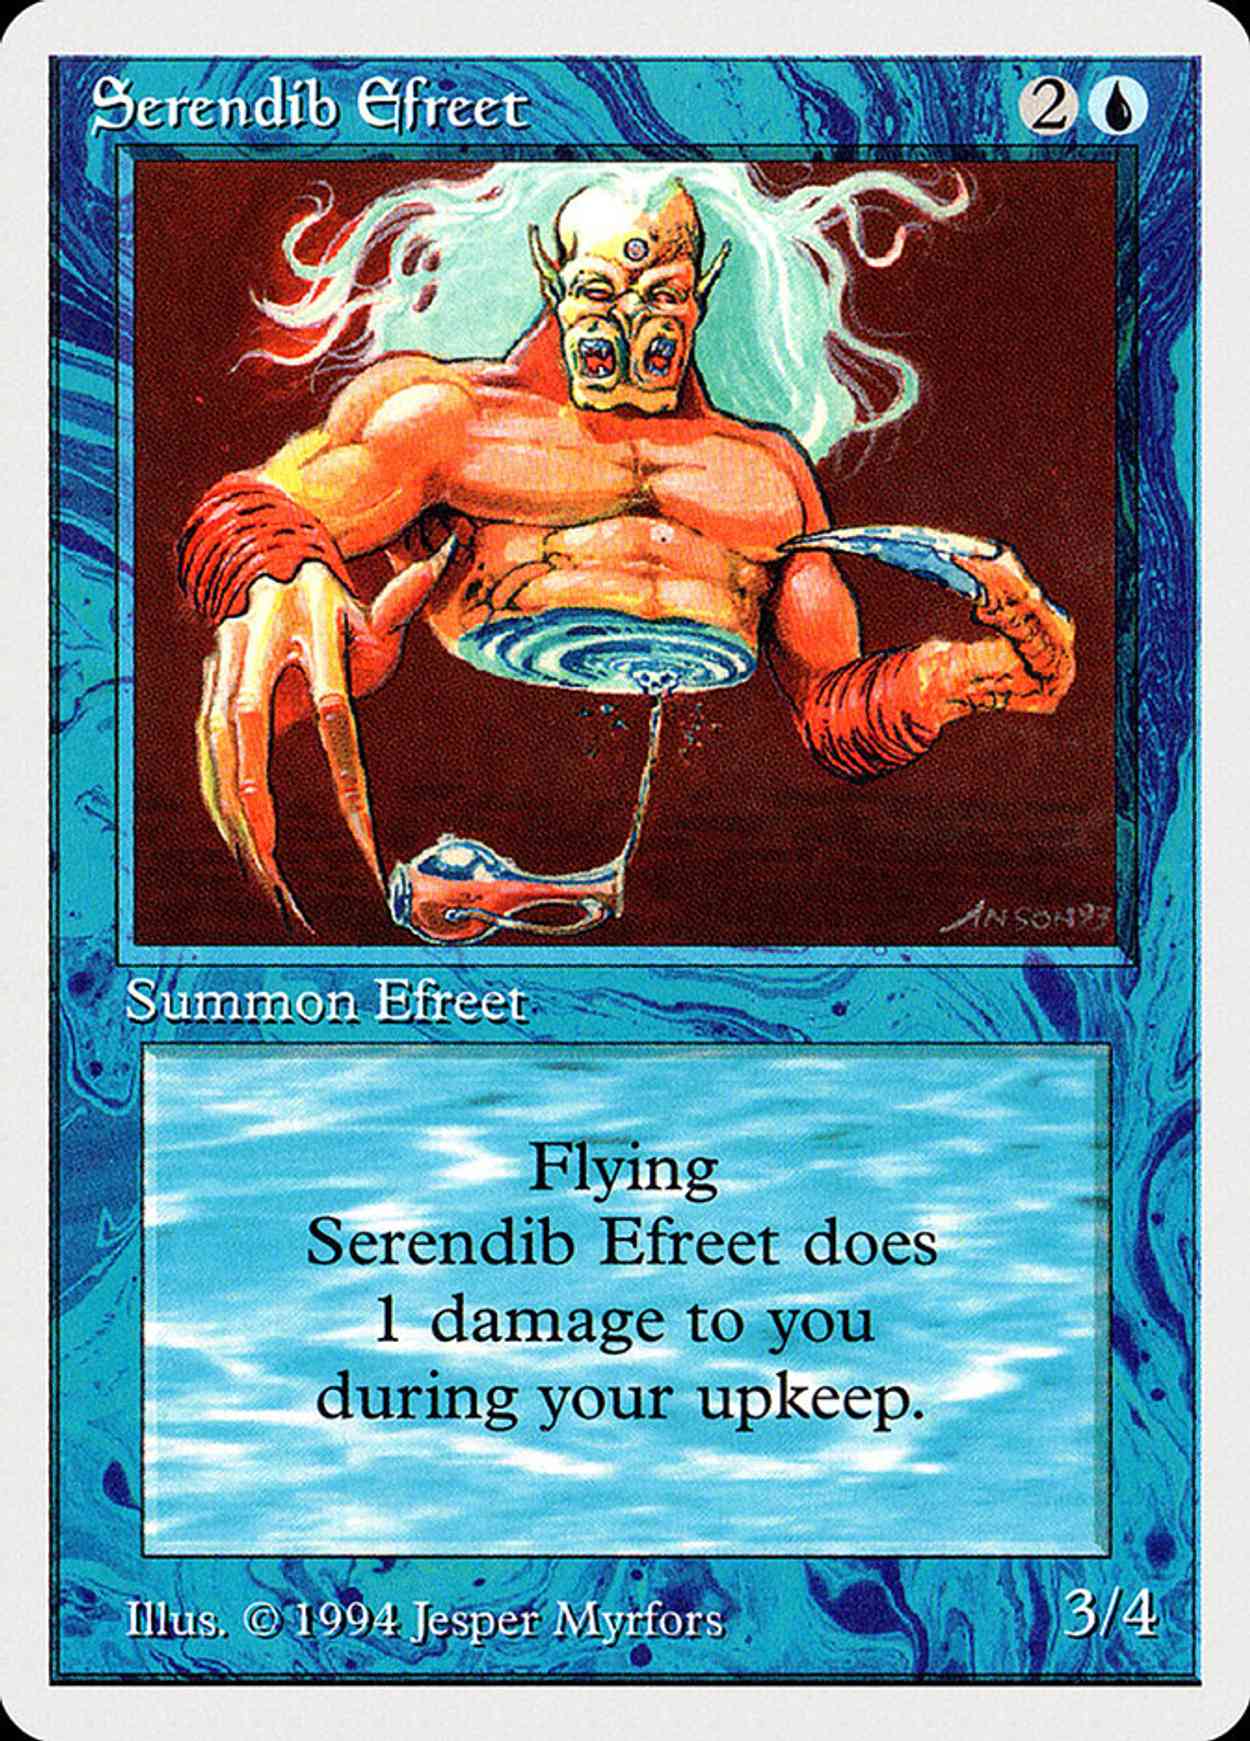 Serendib Efreet magic card front